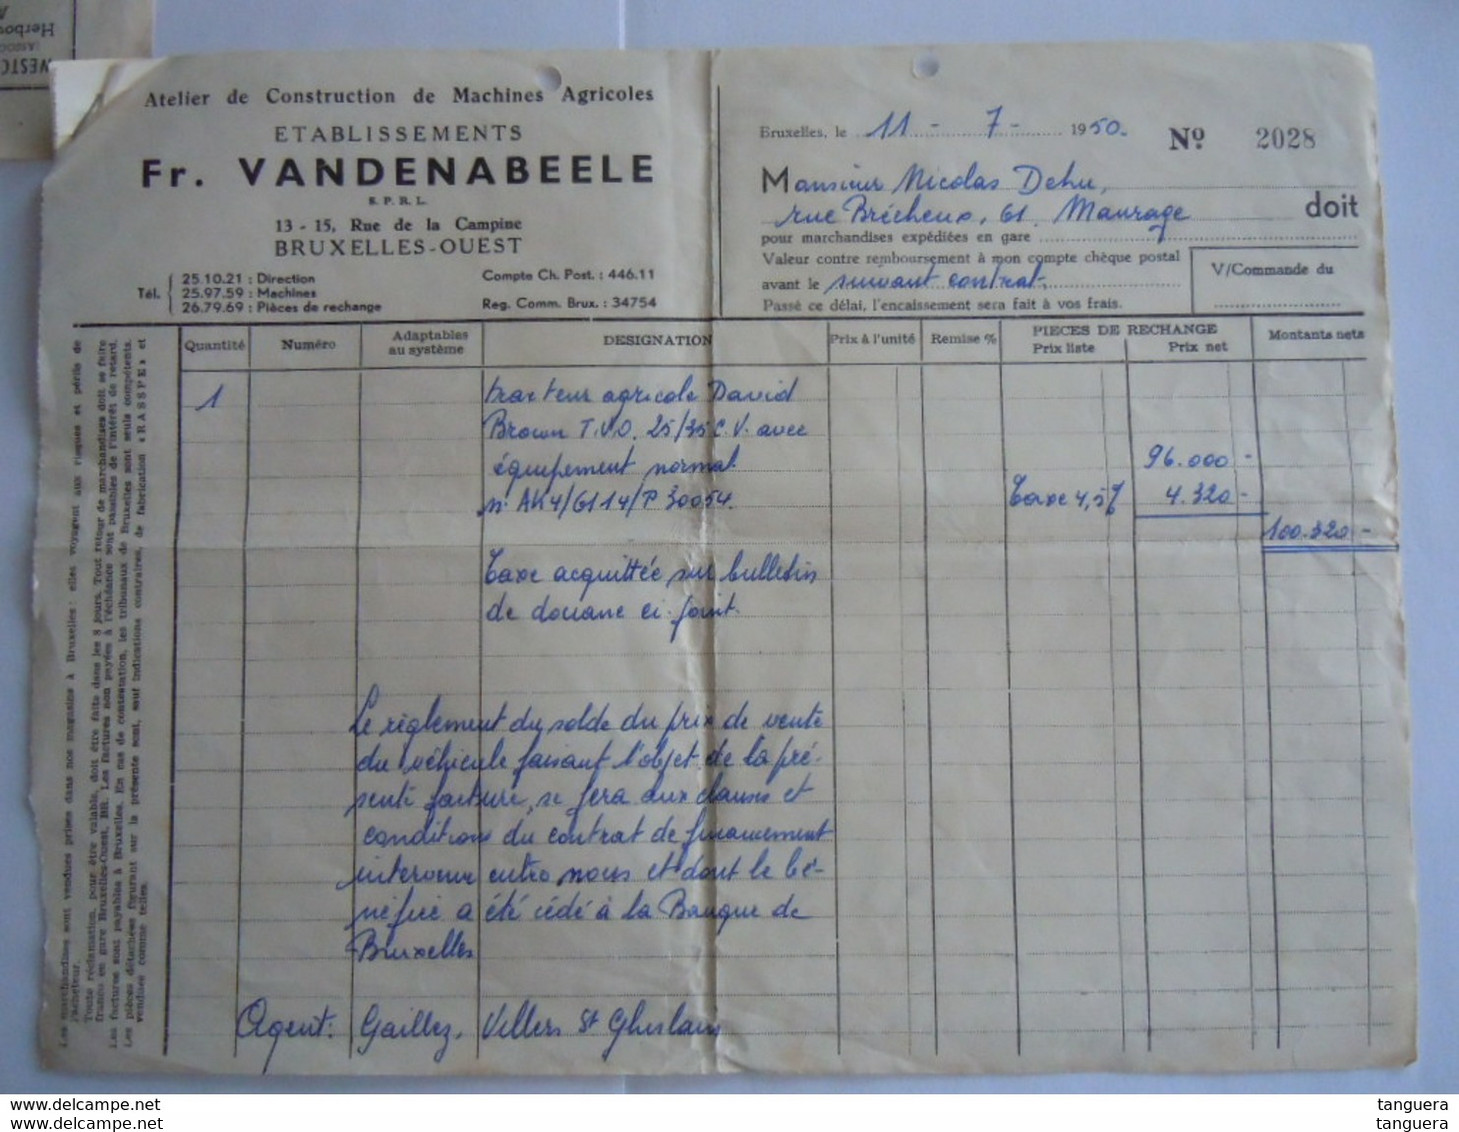 1950 Bulletin Taxes De Transmission Et De Luxe Douane Antwerpen 4320 Fr + Facture Pour Tracteur Agricole David Brown - Documents